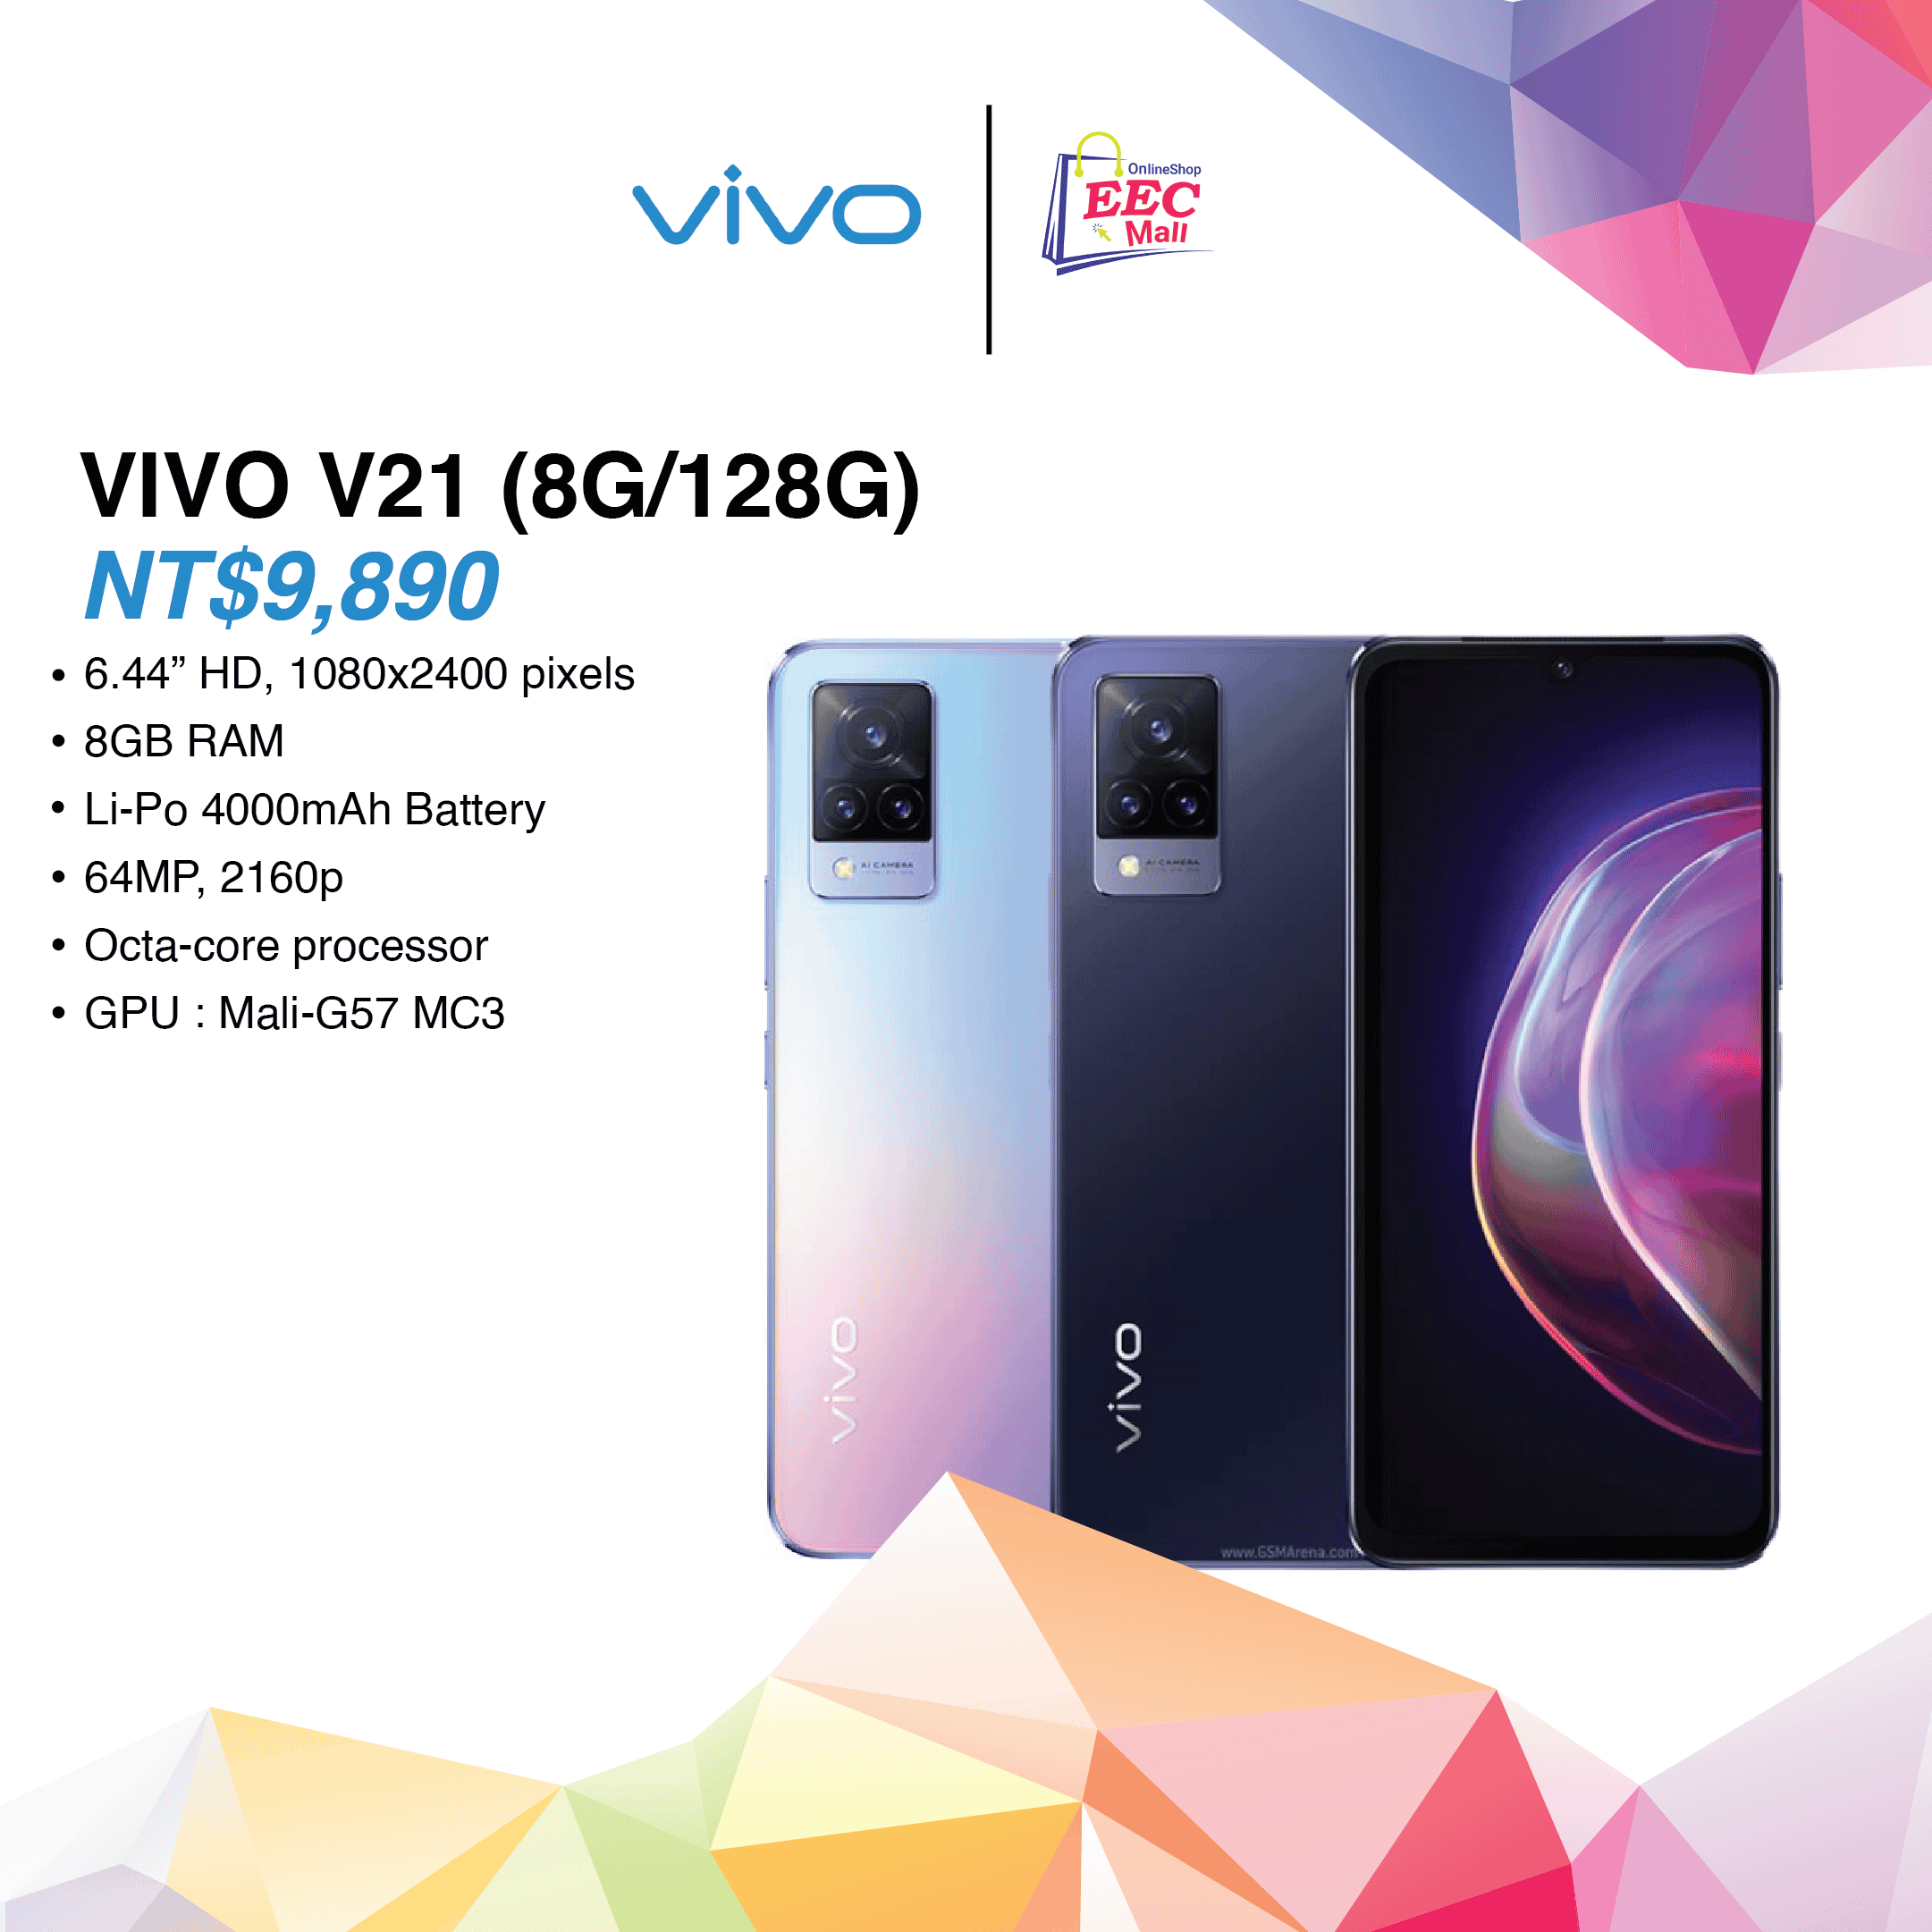 Vivo V21 (8G/128G)